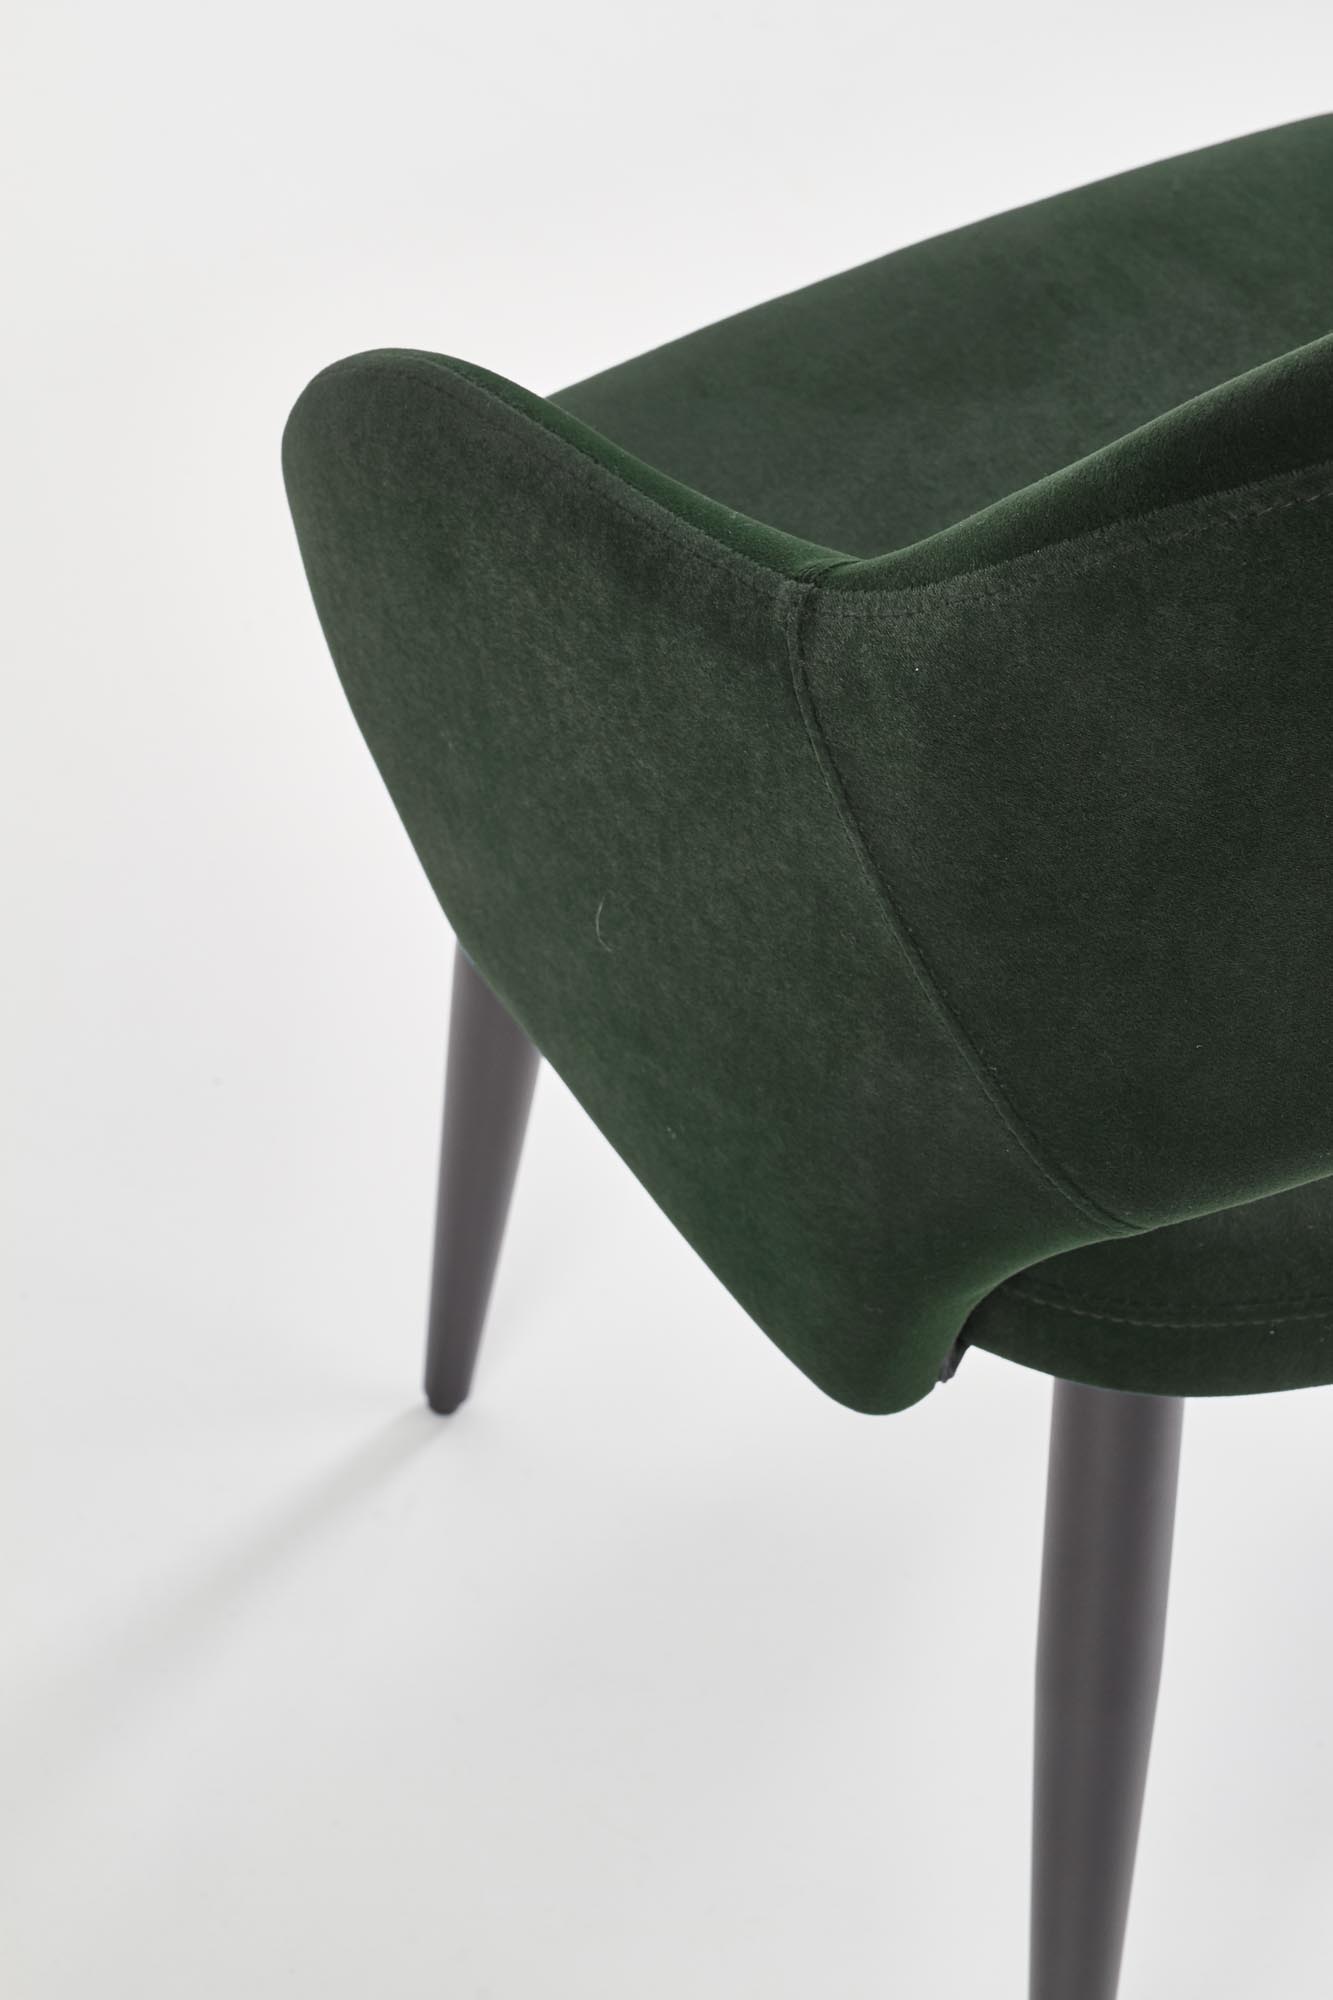 Čalúnená stolička K364 - tmavý Zelený Stolička čalúnená k364 - tmavý Zelený